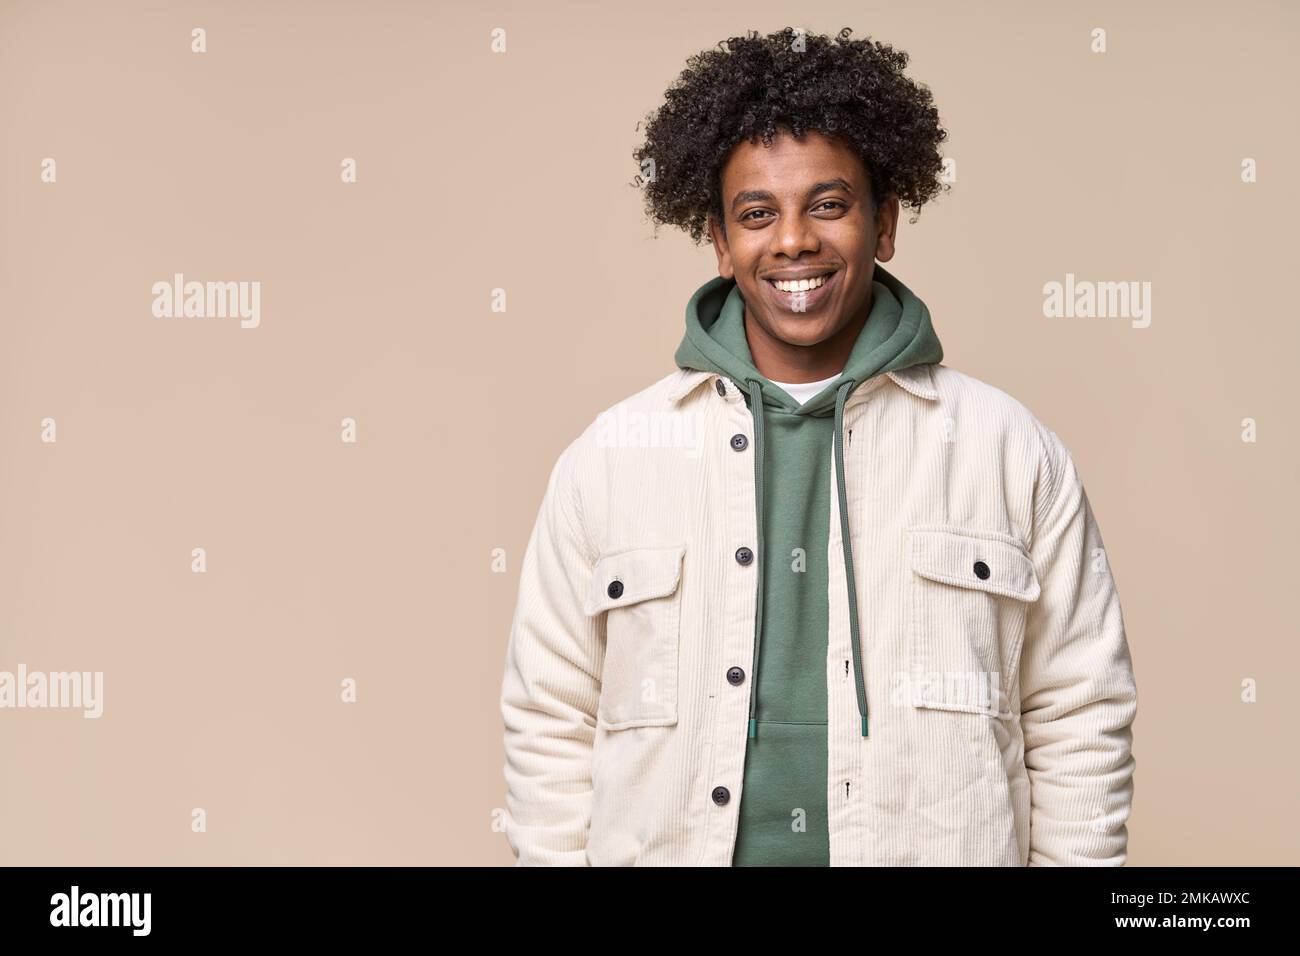 Lächelnder, cooler afroamerikanischer Teenager, isoliert auf beigefarbenem Hintergrund. Stockfoto